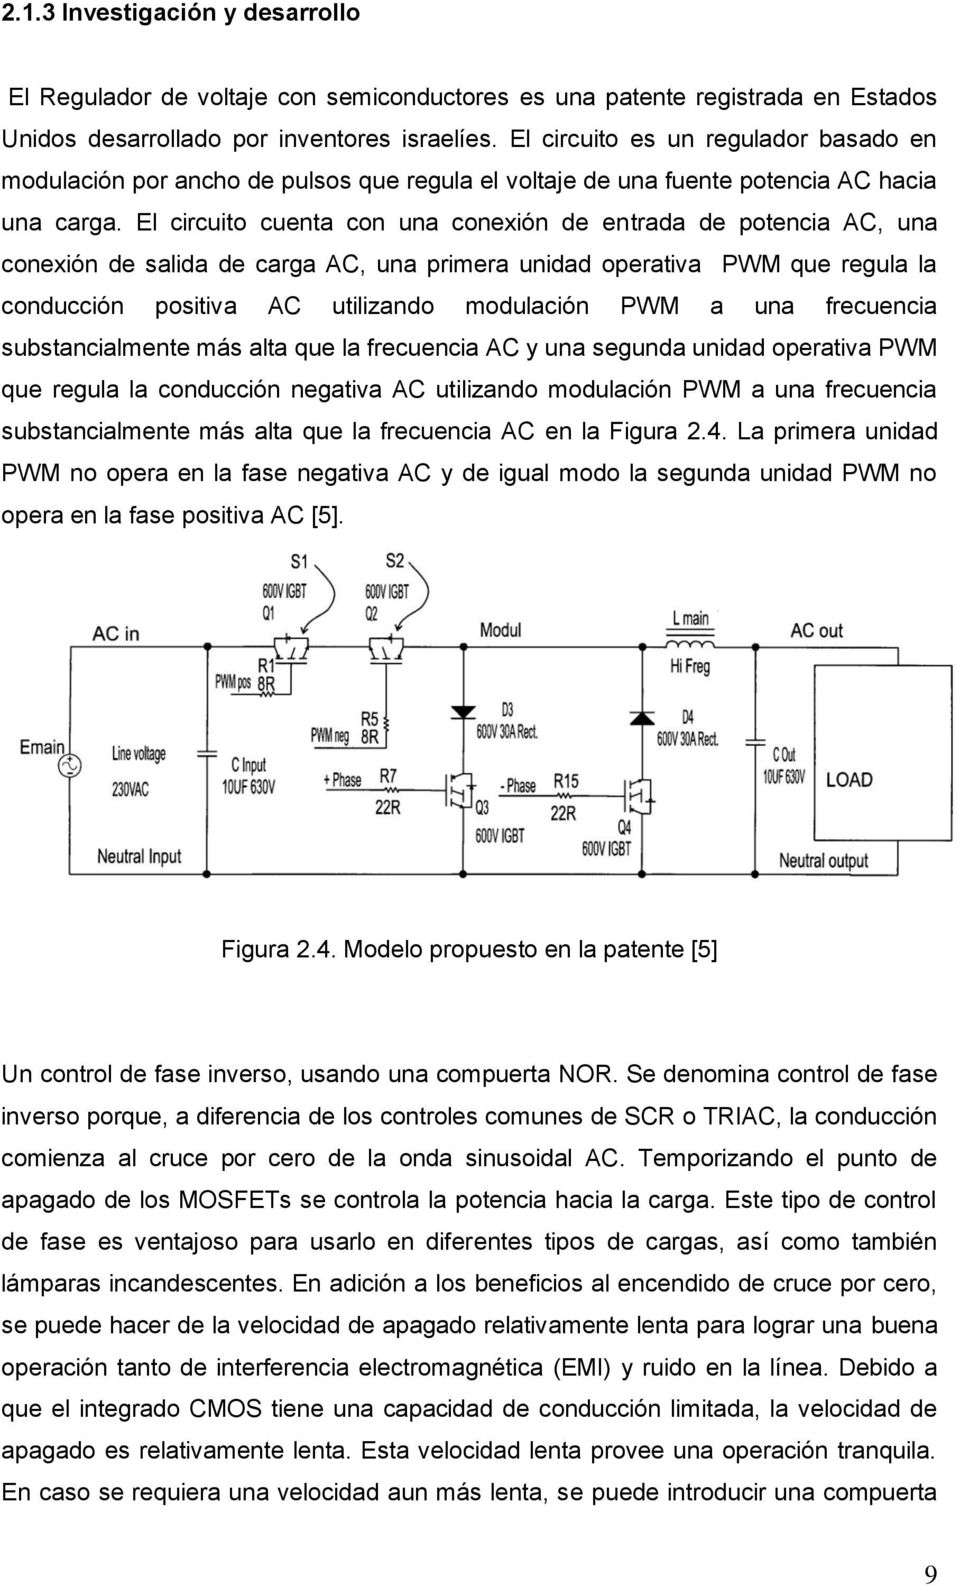 El circuito cuenta con una conexión de entrada de potencia AC, una conexión de salida de carga AC, una primera unidad operativa PWM que regula la conducción positiva AC utilizando modulación PWM a